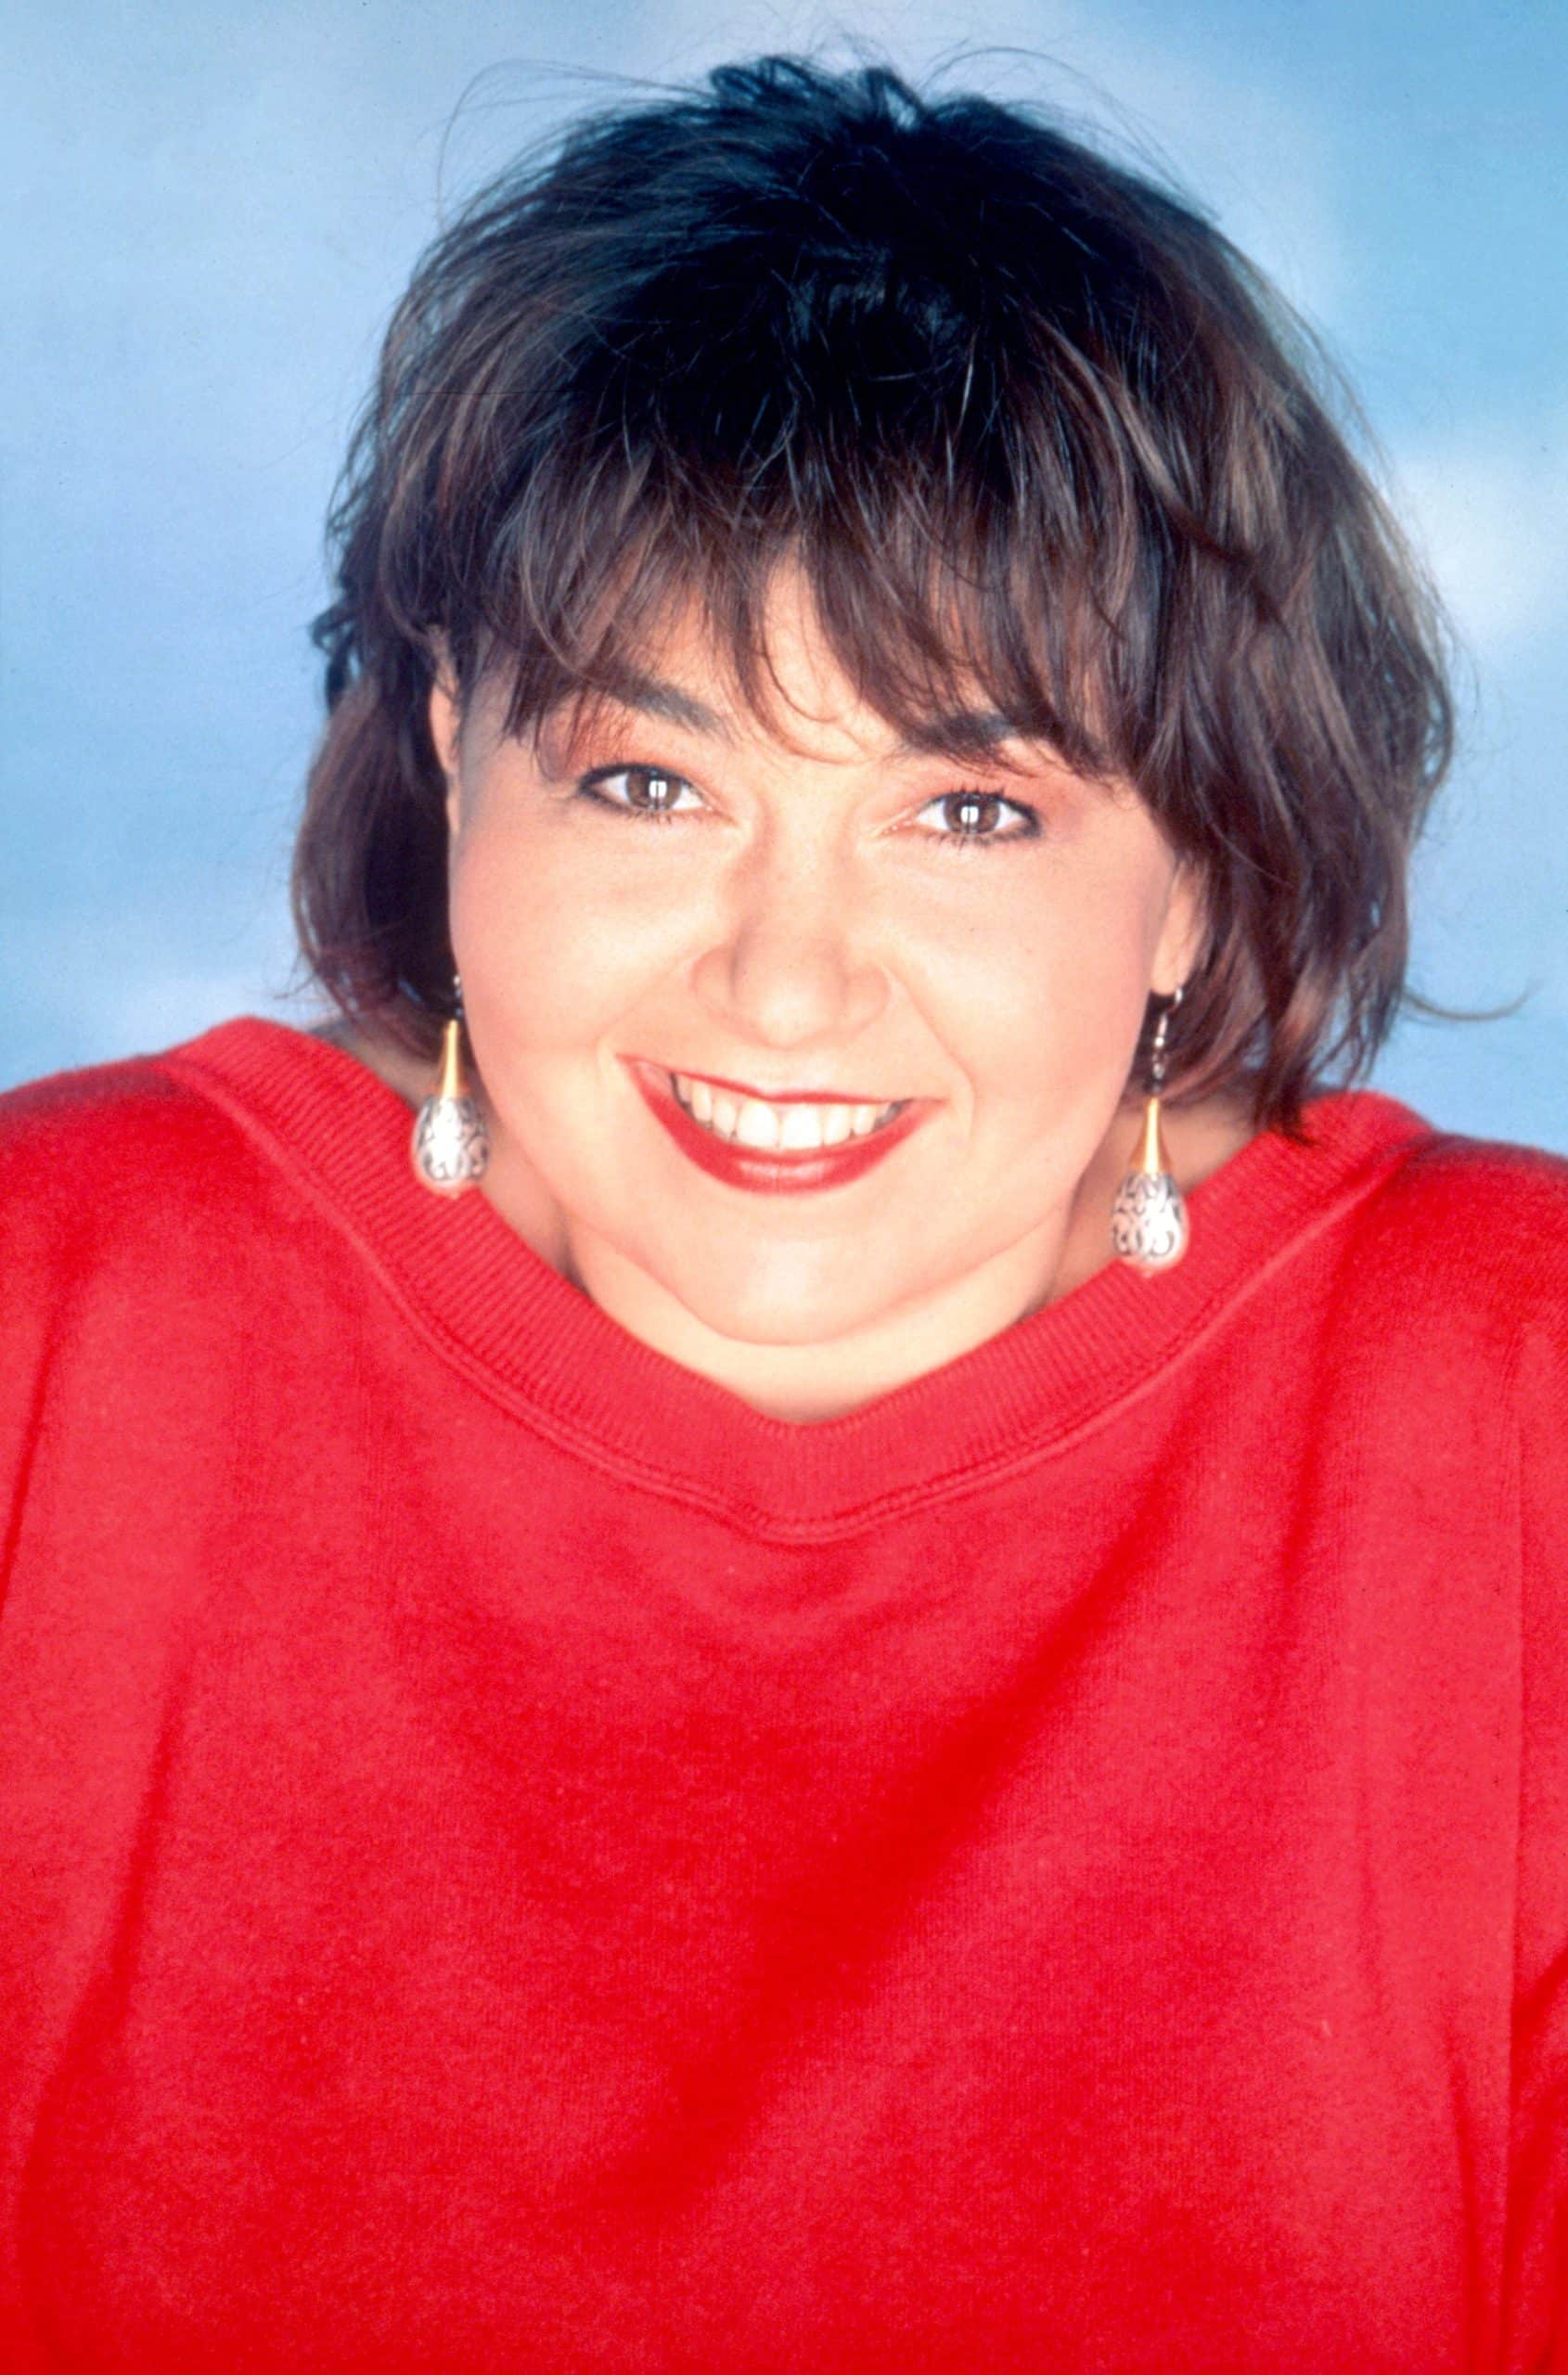 ROSEANNE, Roseanne Barr, (Season 4, 1991), 1988-2018